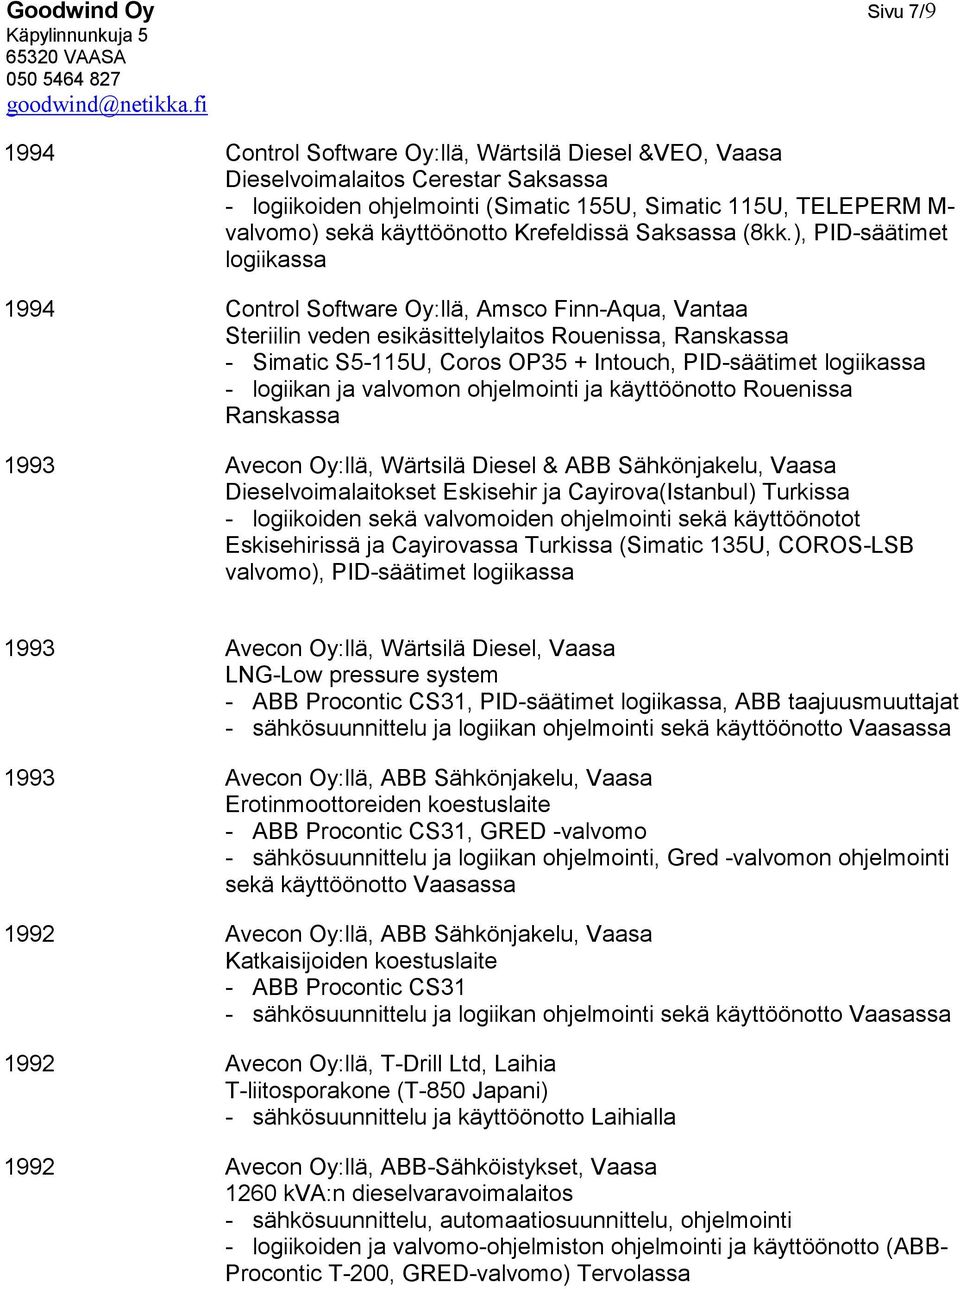 ), PID-säätimet logiikassa 1994 Control Software Oy:llä, Amsco Finn-Aqua, Vantaa Steriilin veden esikäsittelylaitos Rouenissa, Ranskassa - Simatic S5-115U, Coros OP35 + Intouch, PID-säätimet